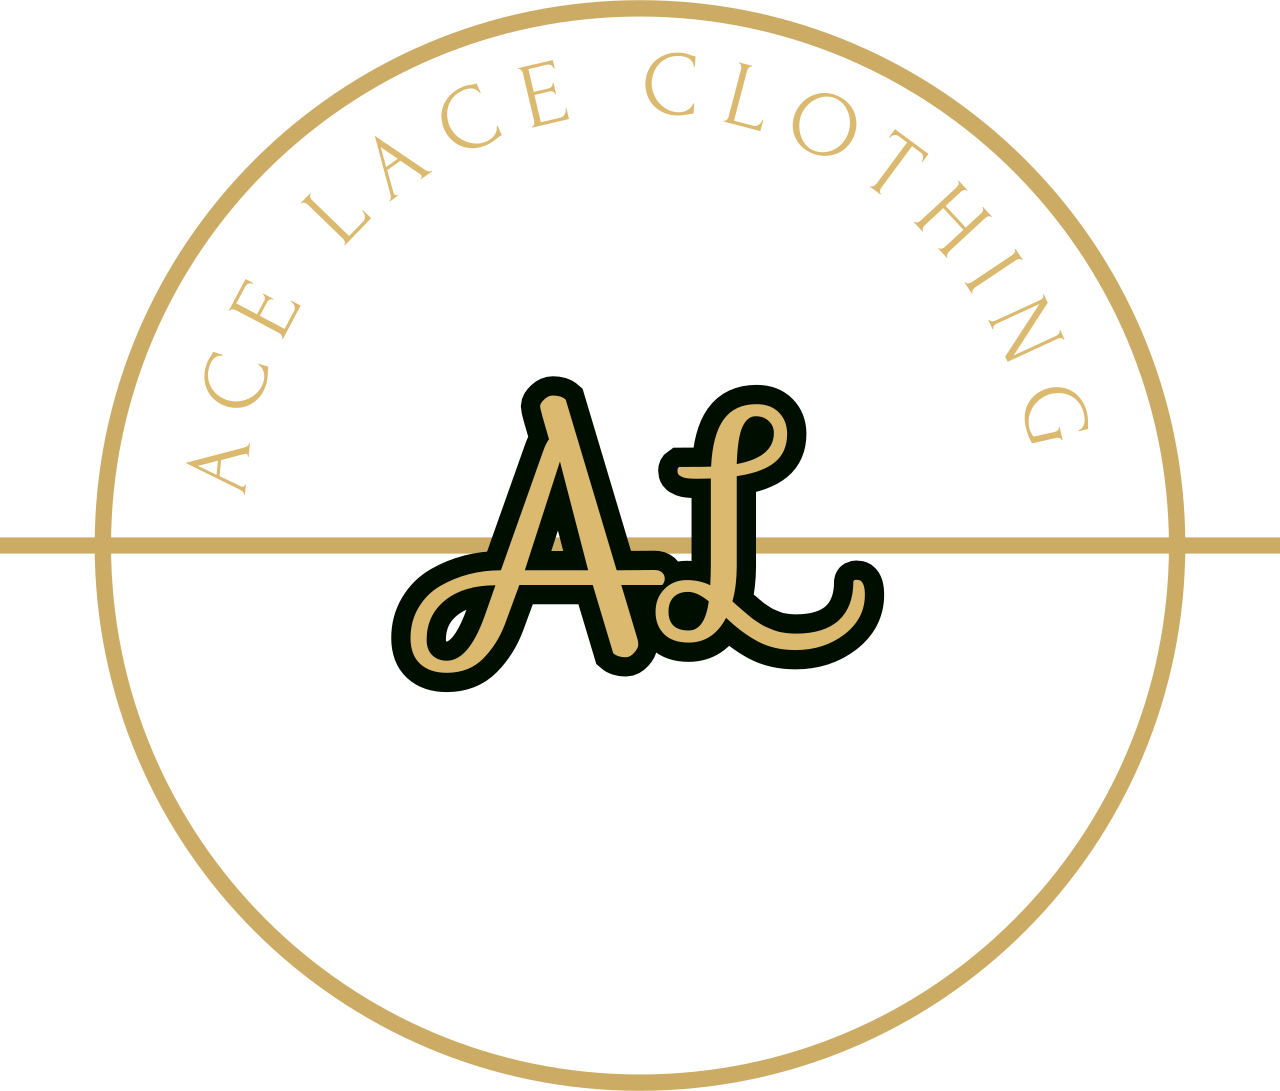 Ace lace clothing 's logo